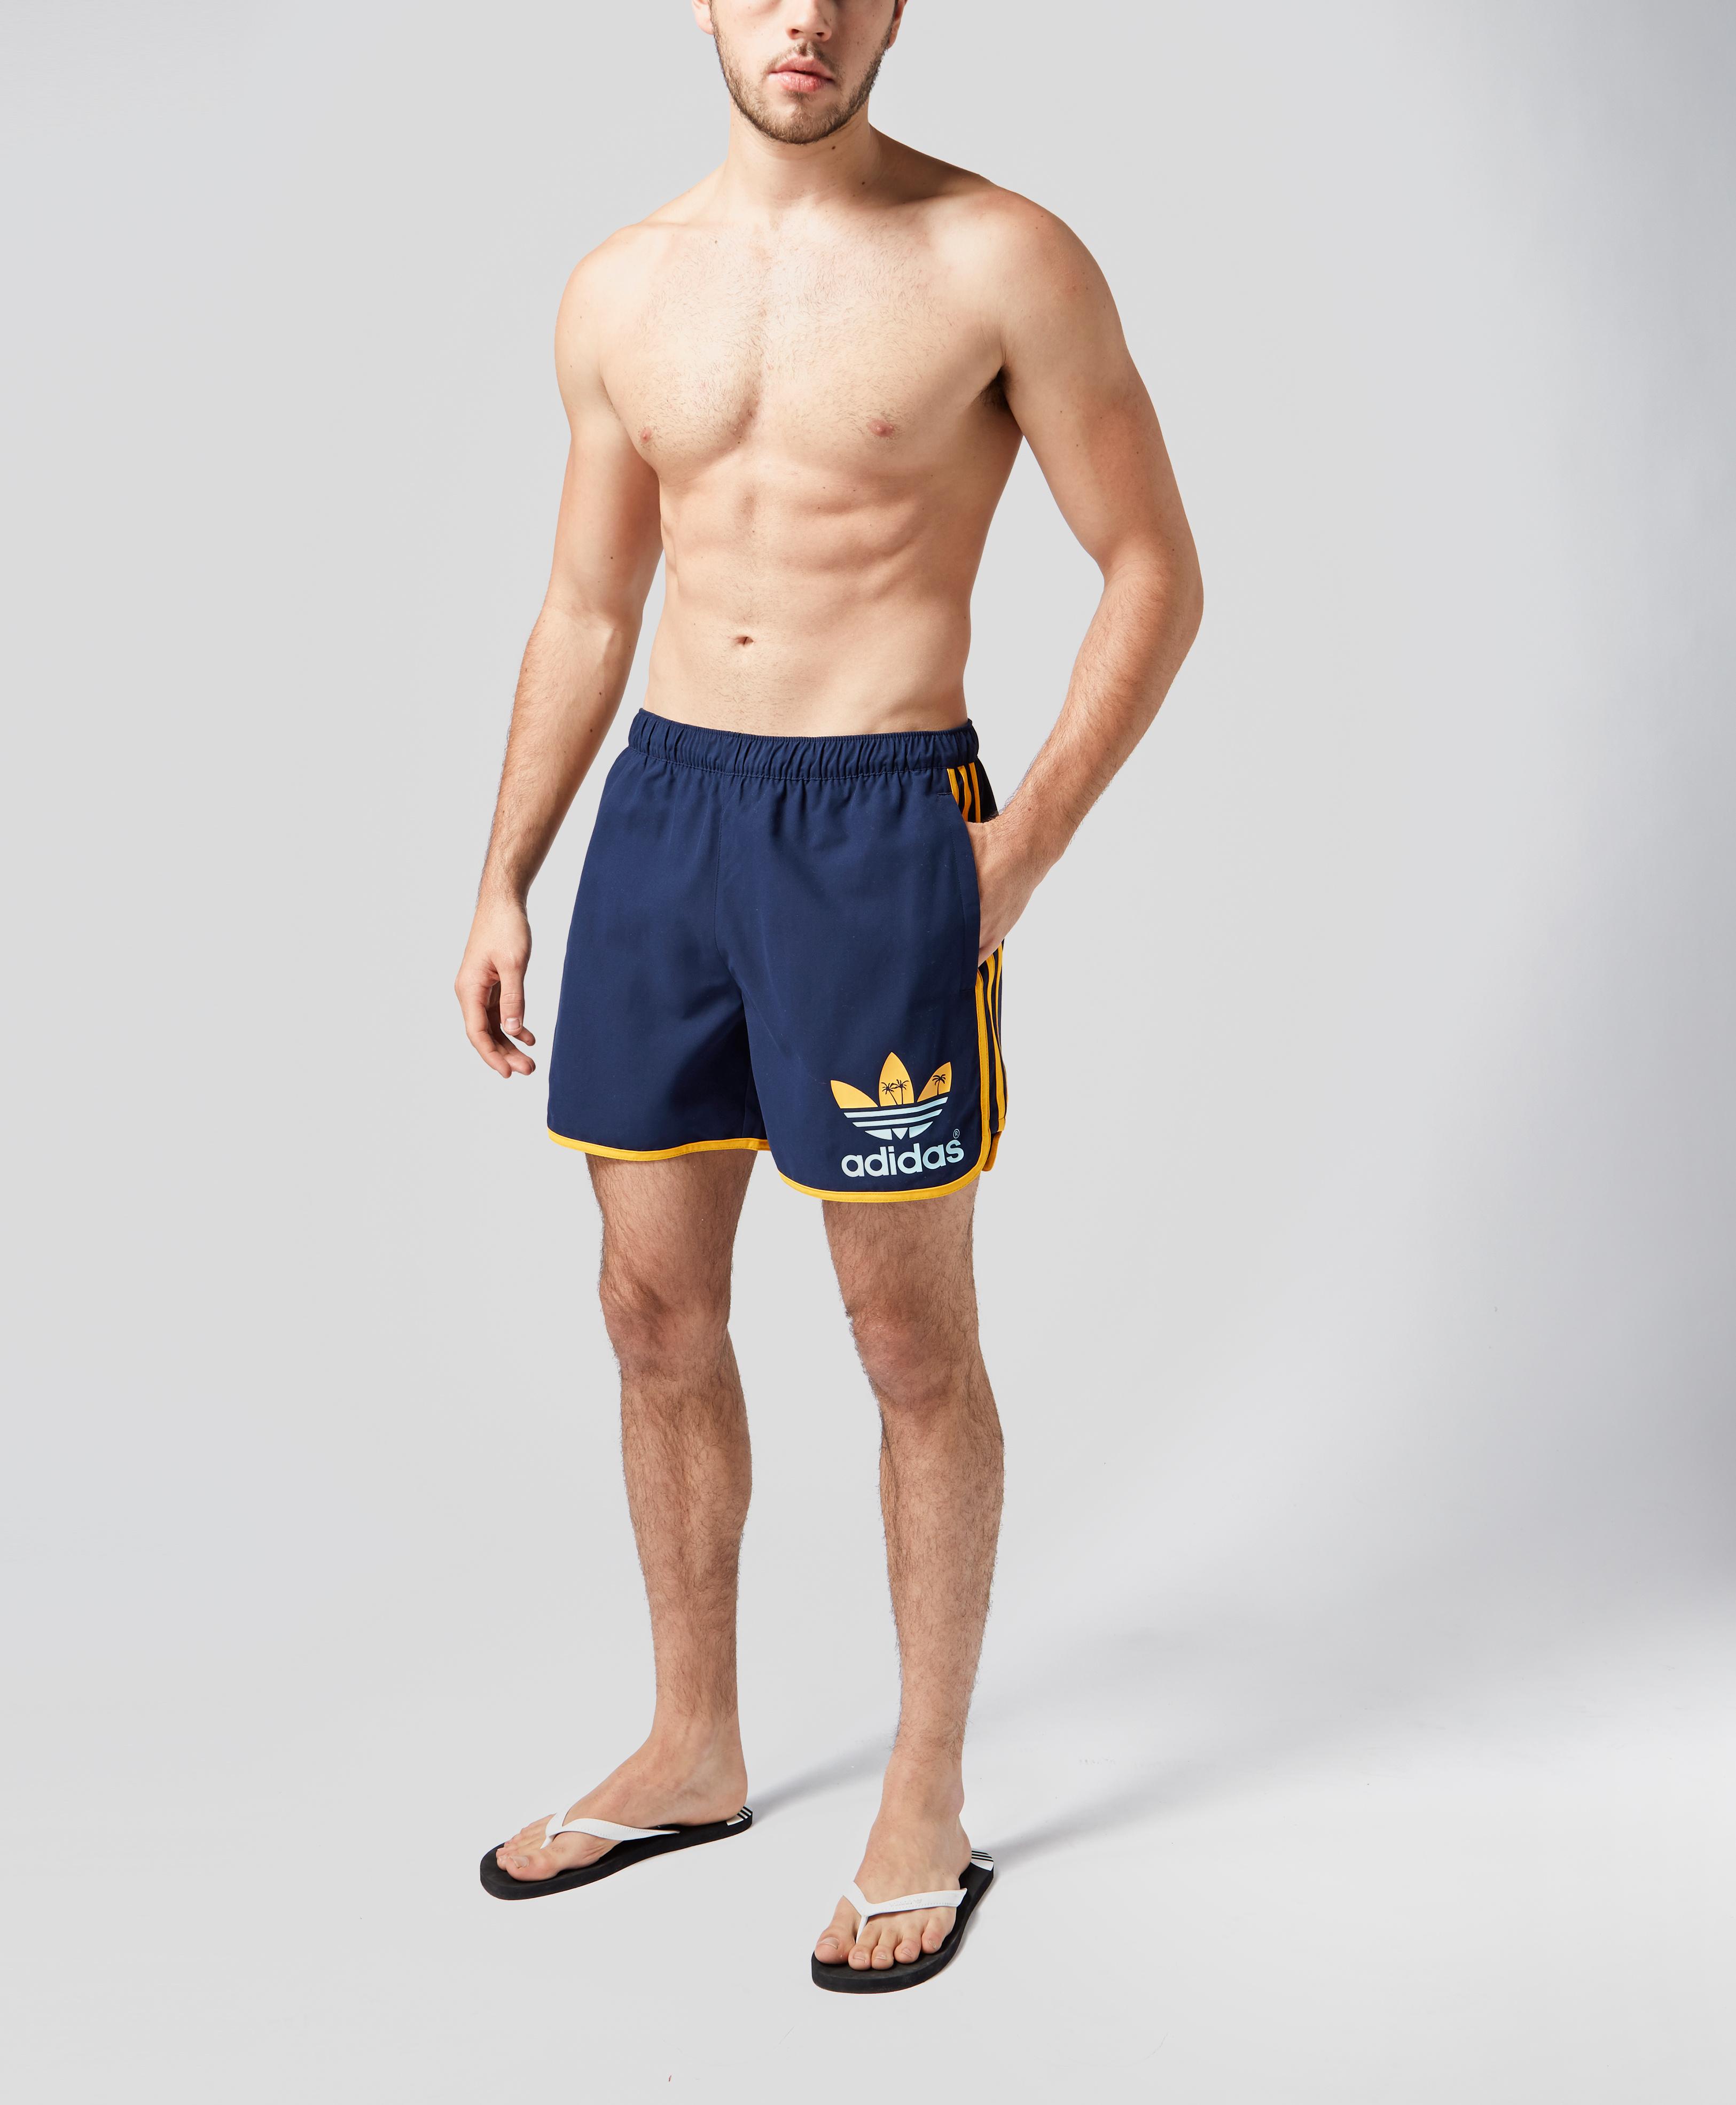 adidas originals island escape swim shorts